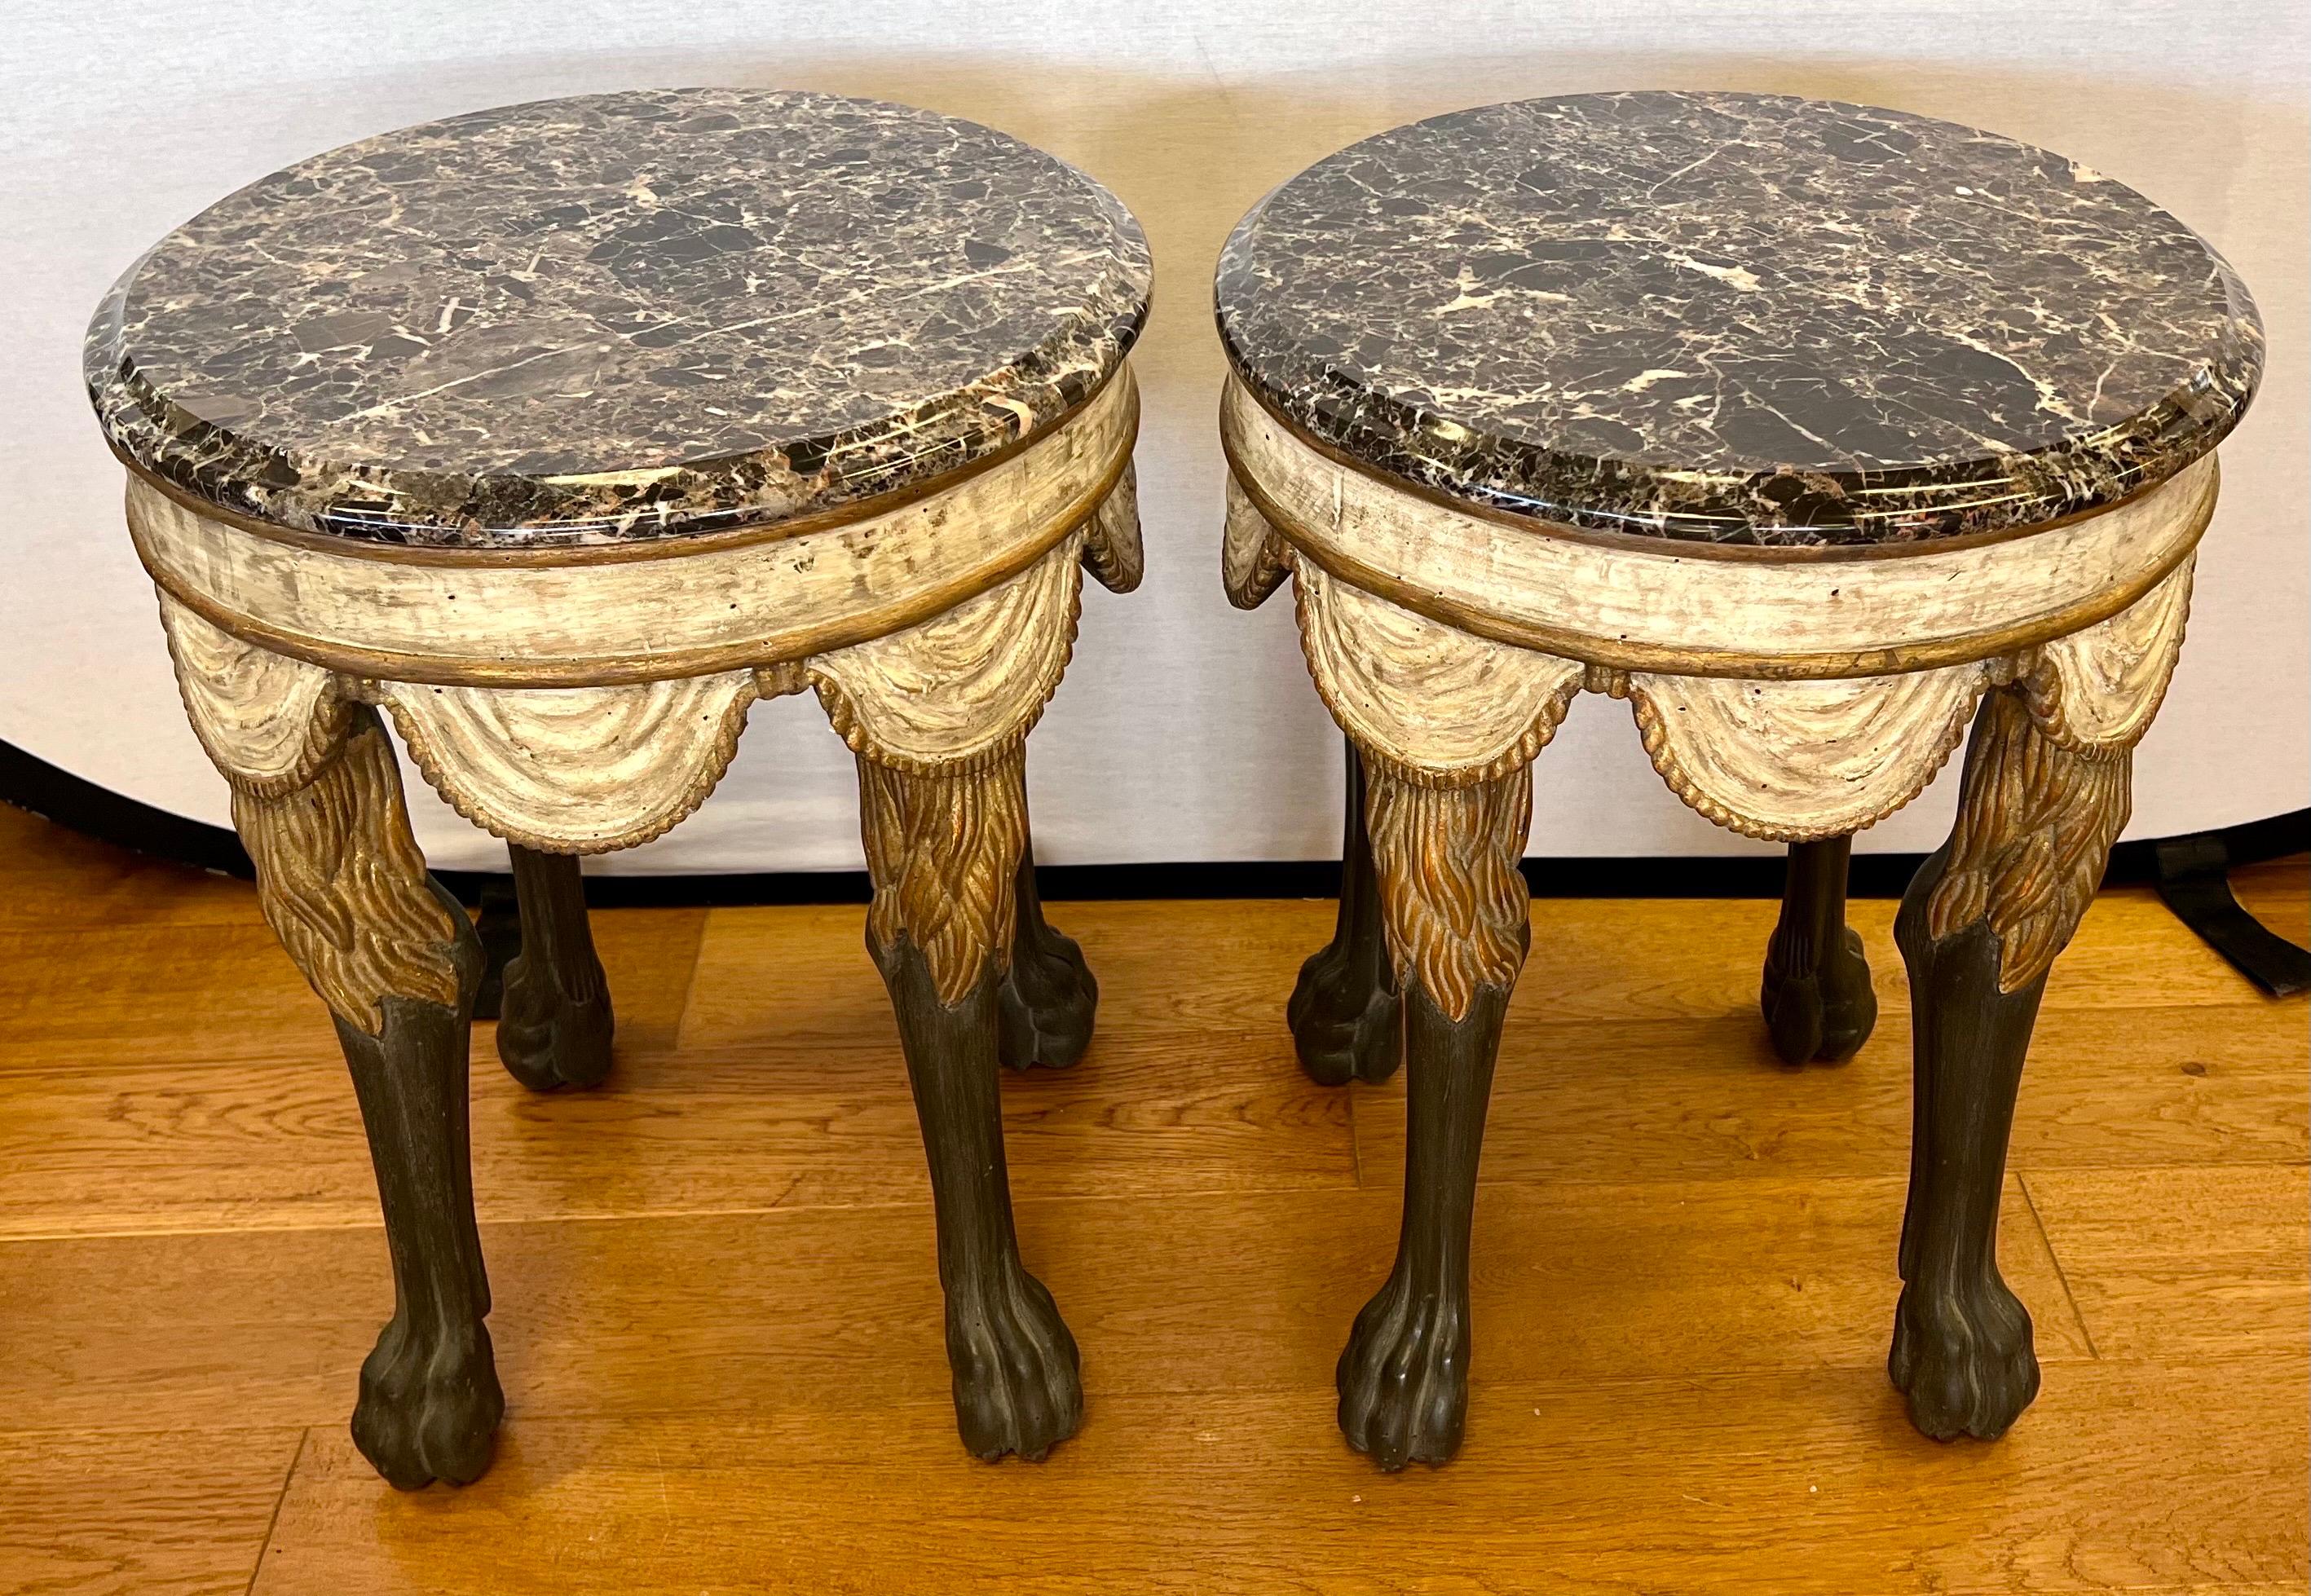 Elegante paire de tables ou Stolls de style napolitain avec le plateau rond en marbre sur une table sculptée et peinte à la main, avec un tissu en forme de vagues et des pattes et jambes de lions stylisés.